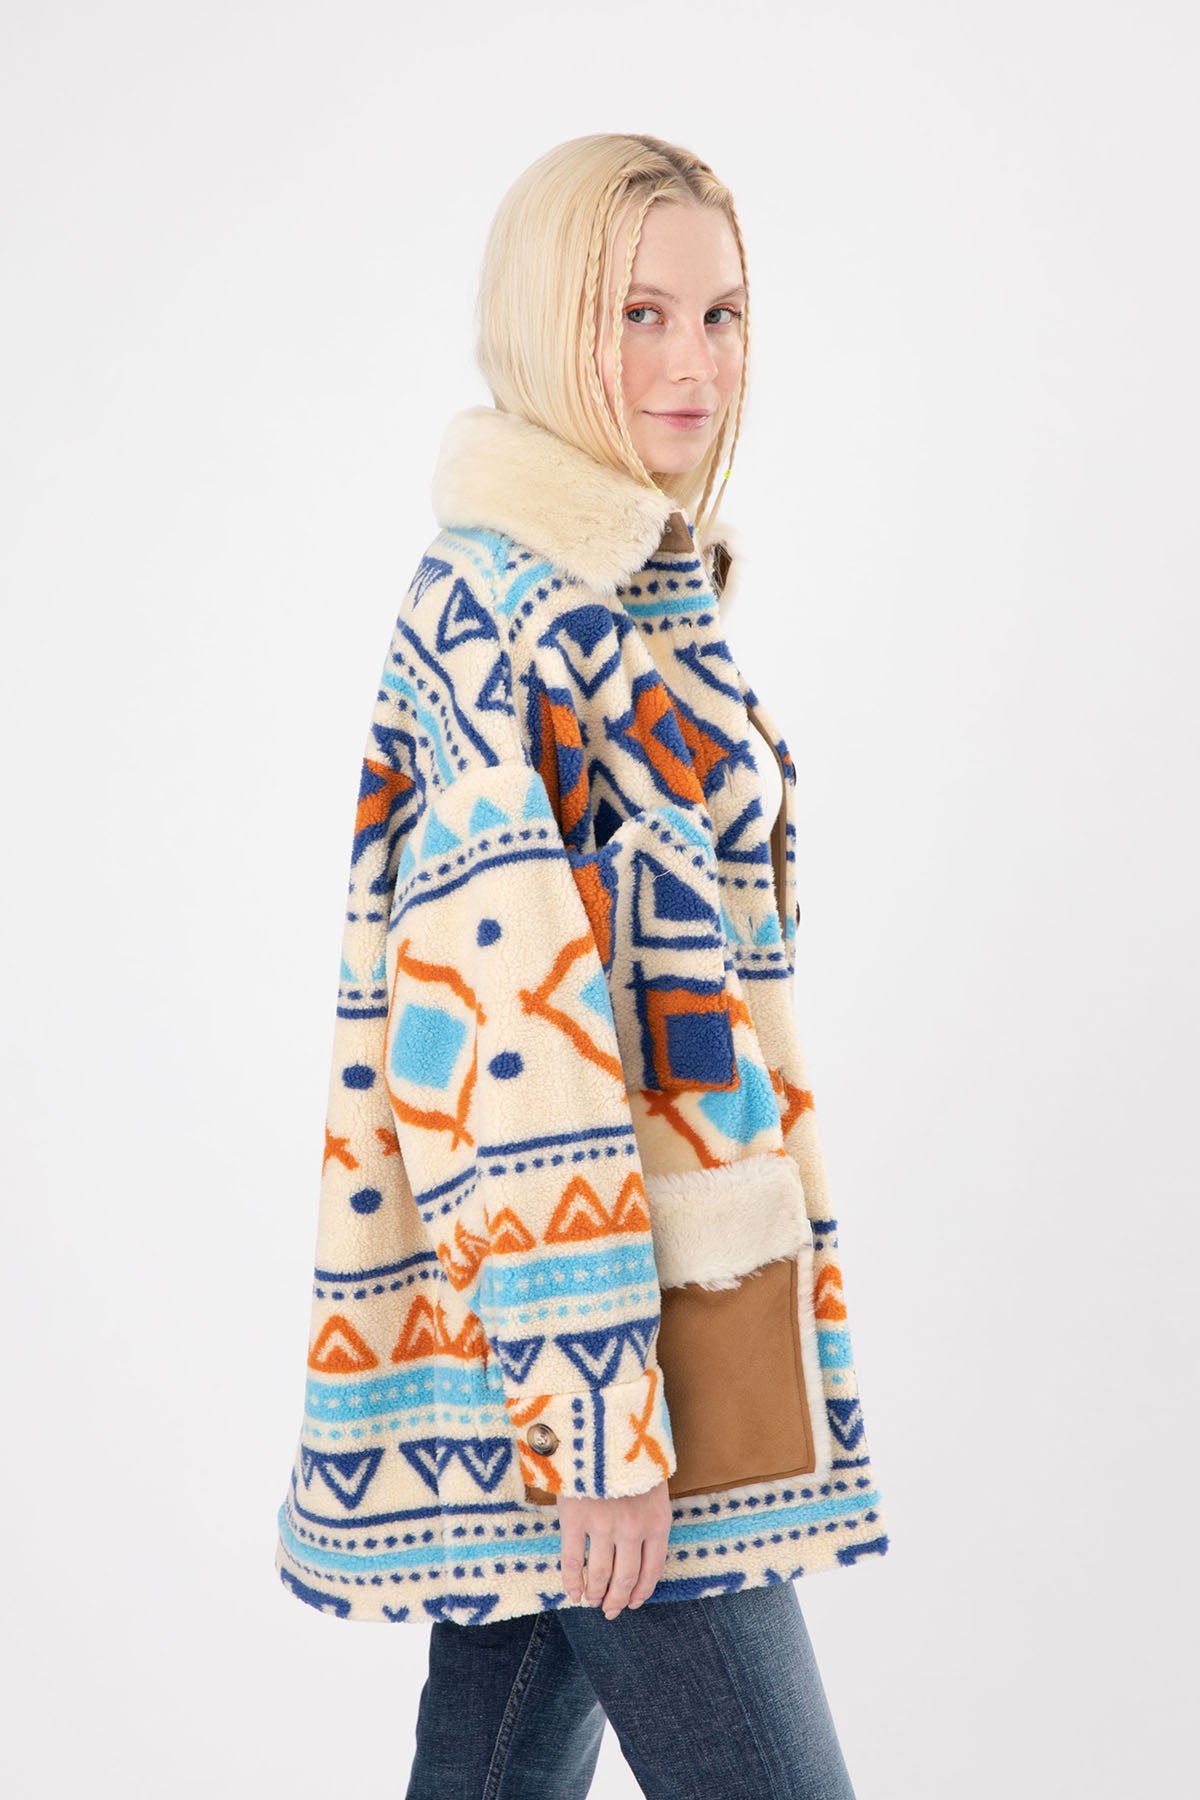 Ava Adore Kürklü Deri Detaylı Kısa Polar Kaban-Libas Trendy Fashion Store